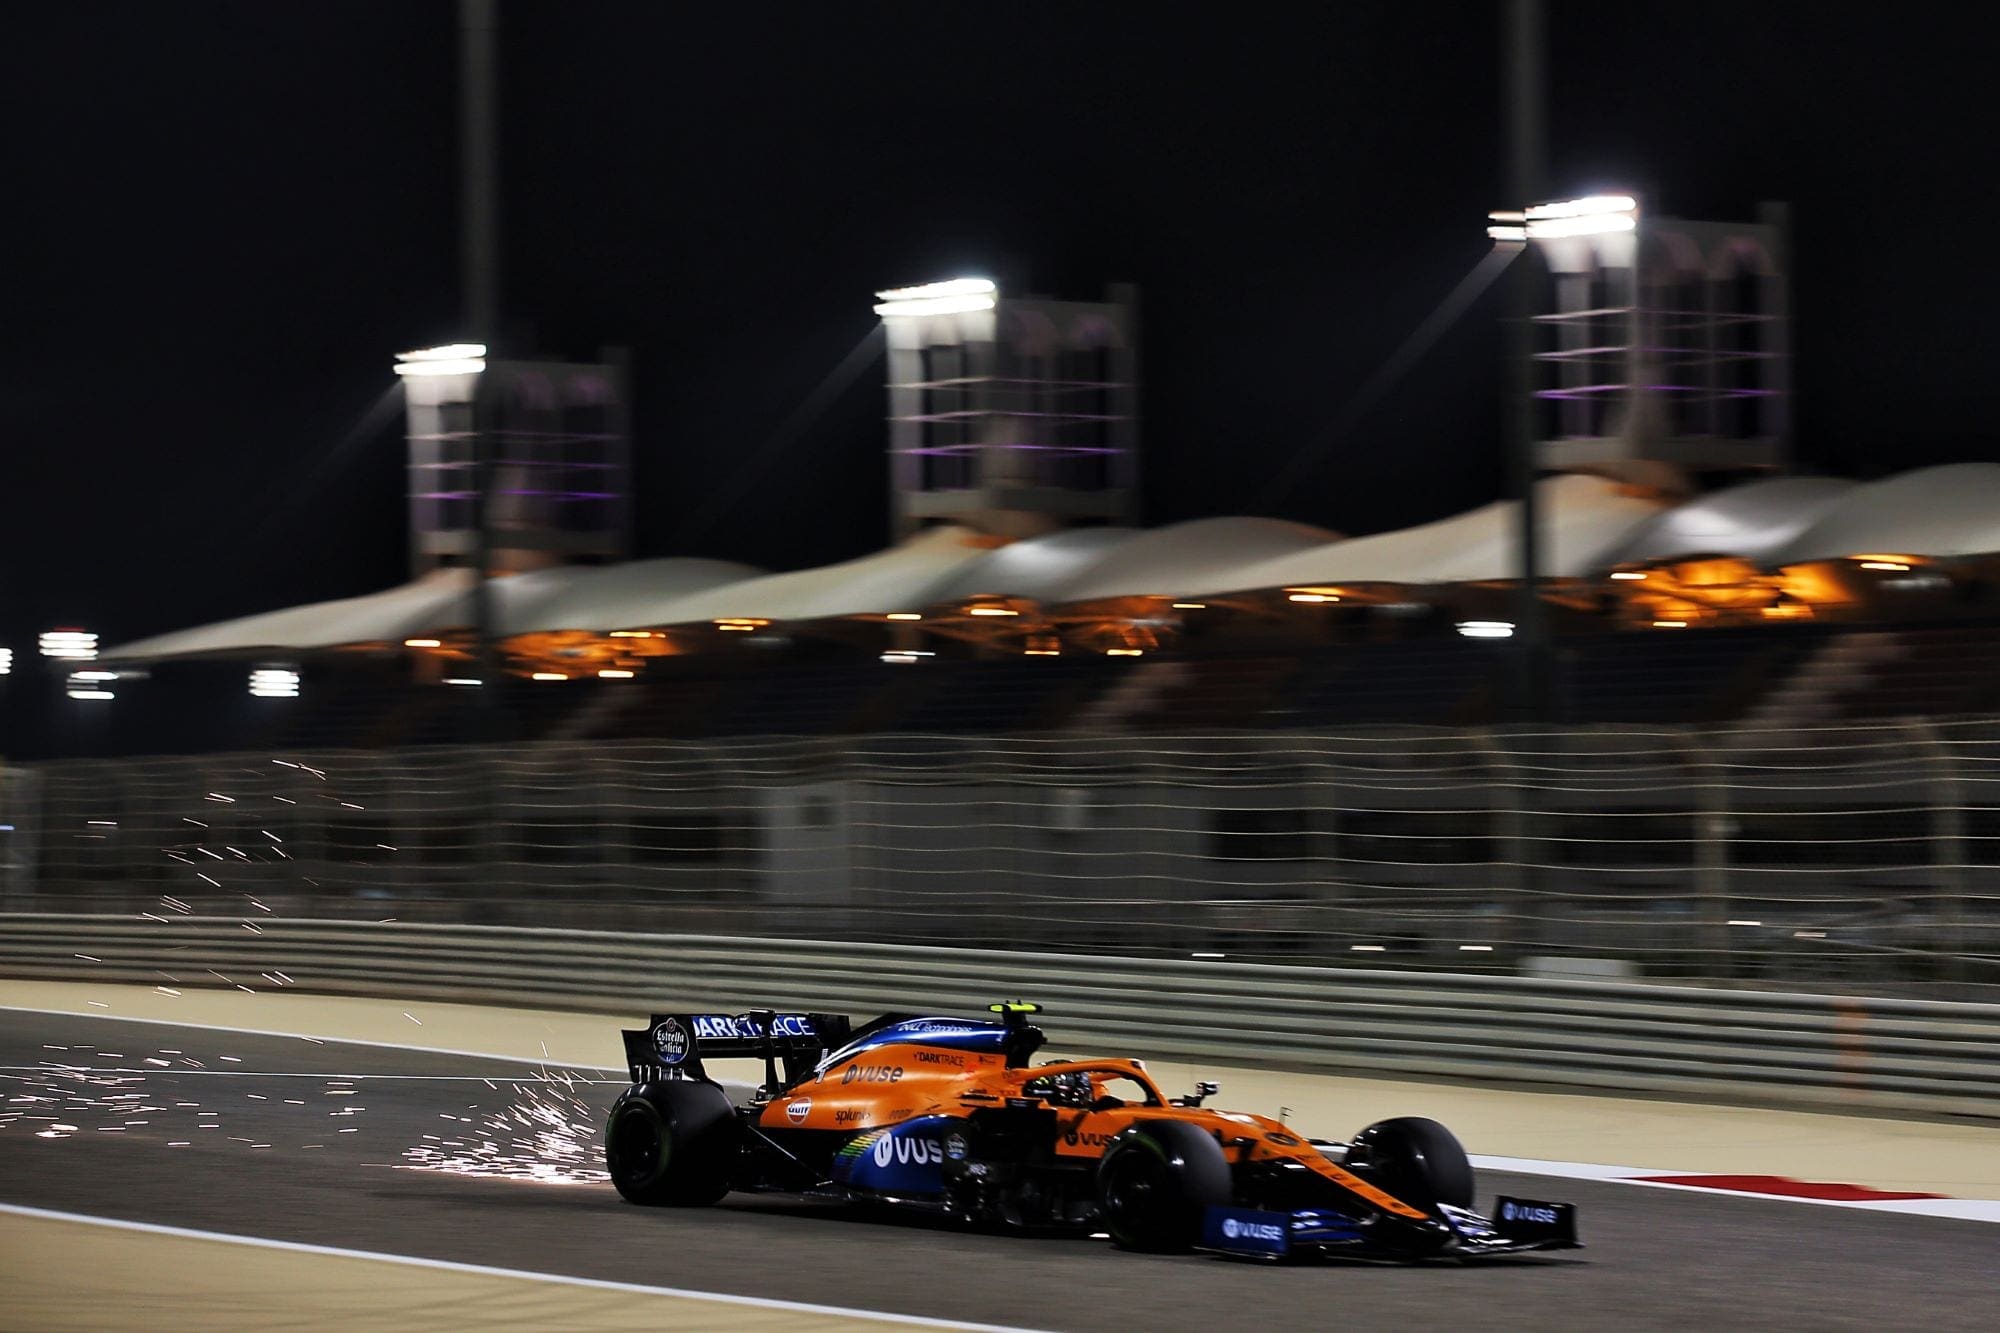 Galeria: confira as imagens desta sexta-feira da F1 no Bahrein